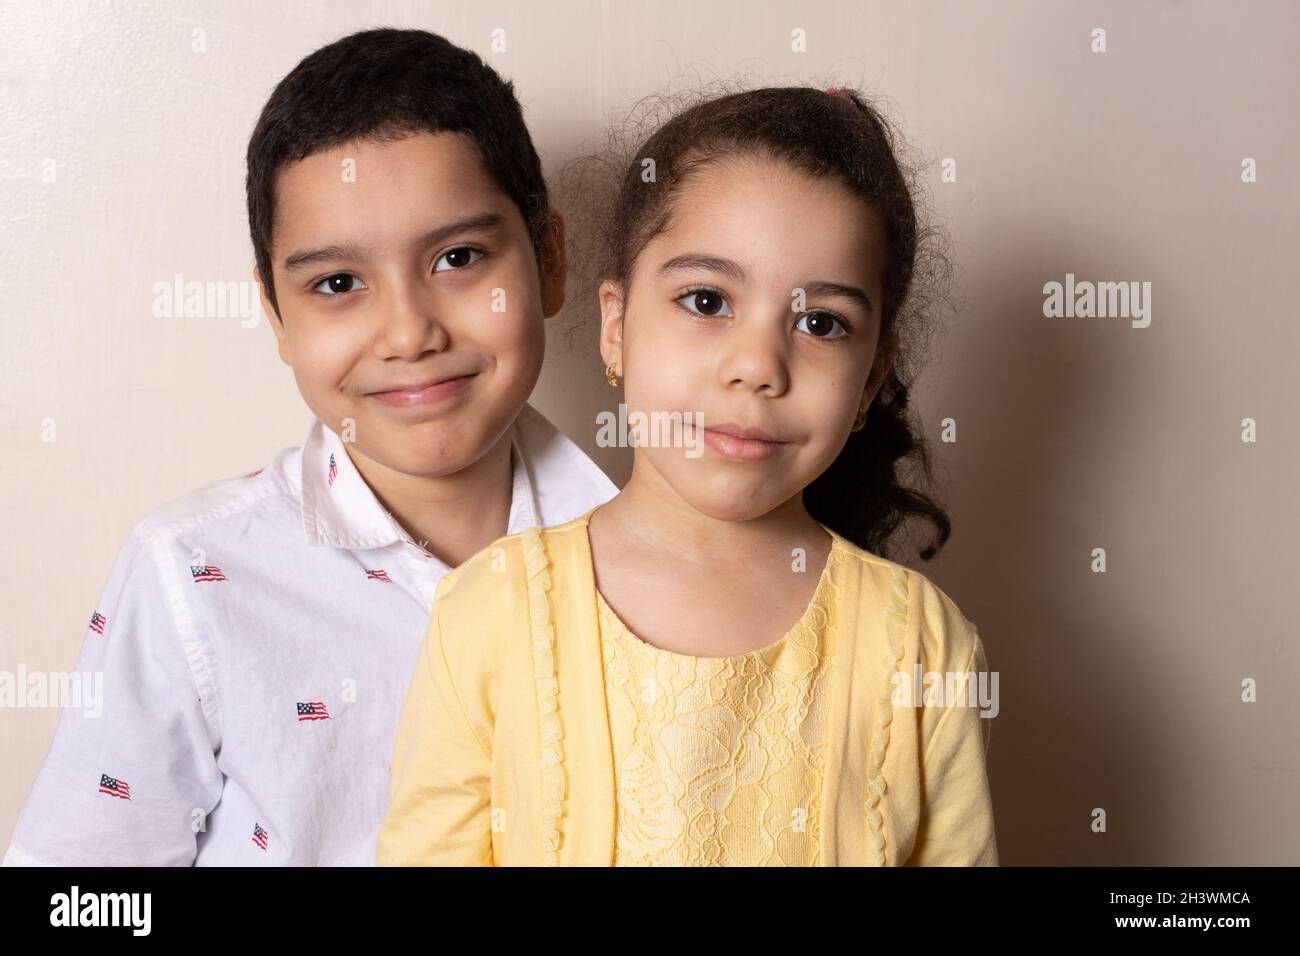 Portrat d'une fille de 4 ans à la maison avec son frère de 9 ans Banque D'Images